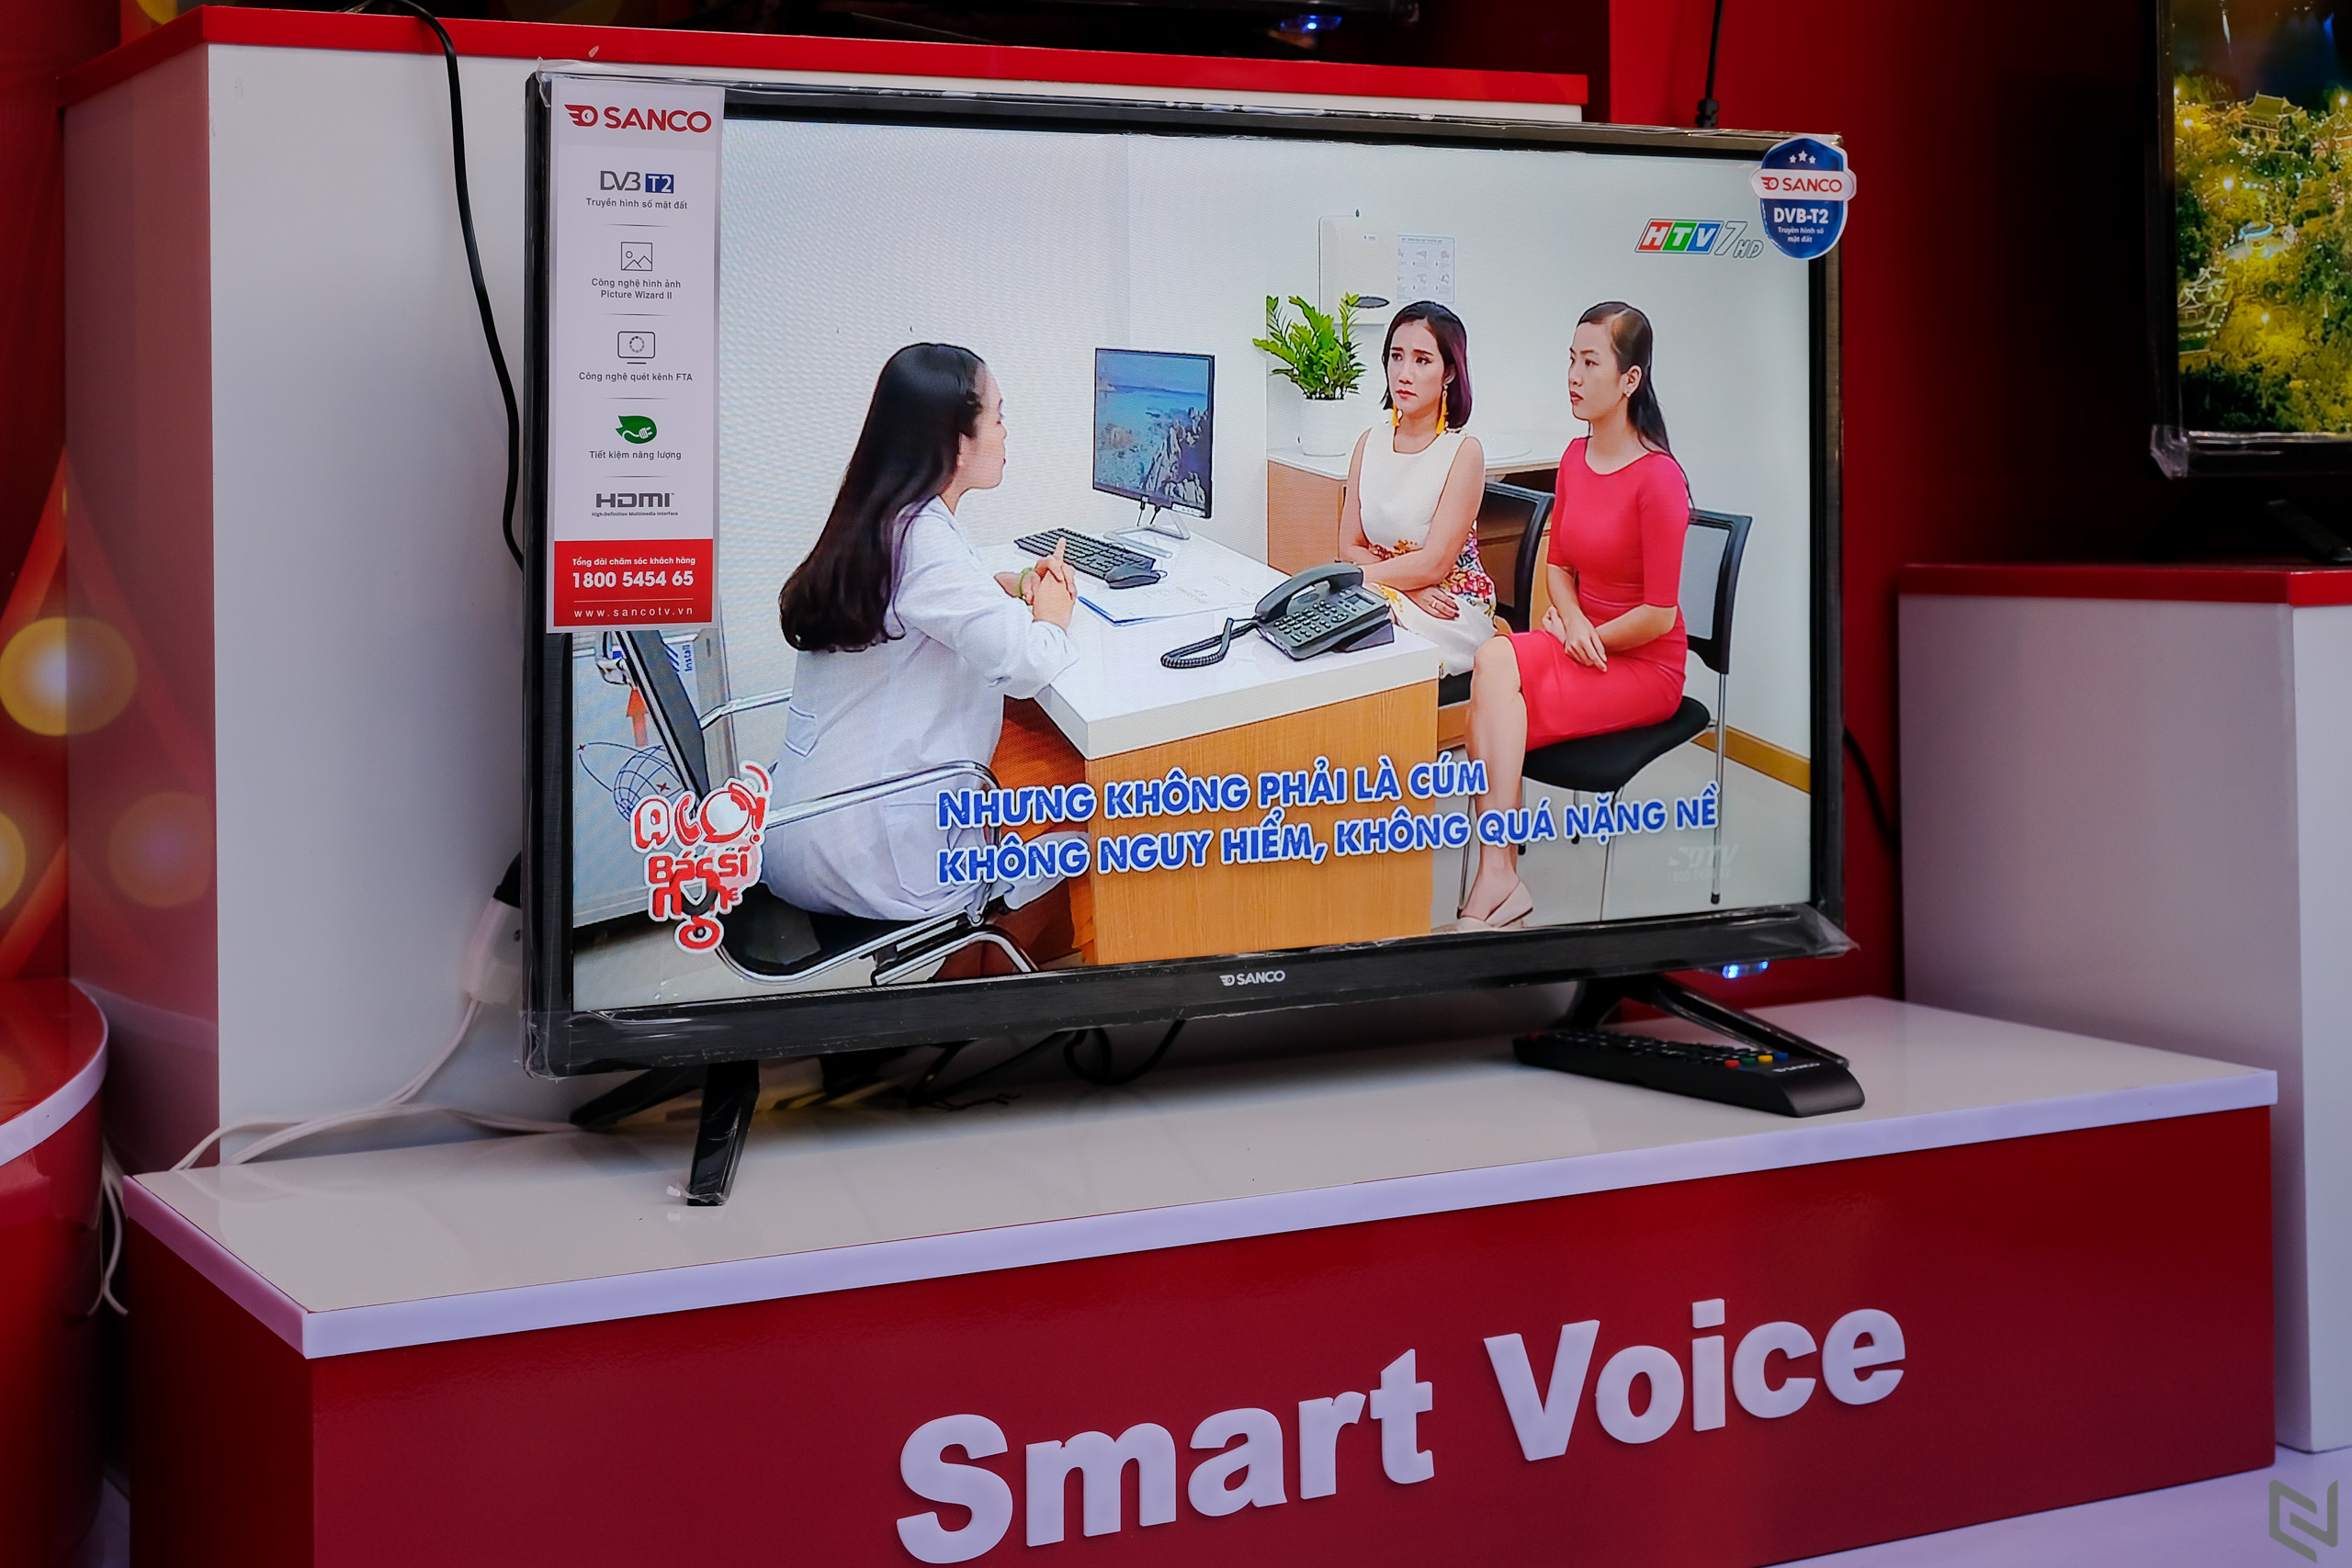 Ra mắt thương hiệu TV Sanco tại Việt Nam, đa dạng sản phẩm TV giá từ 3.2 triệu